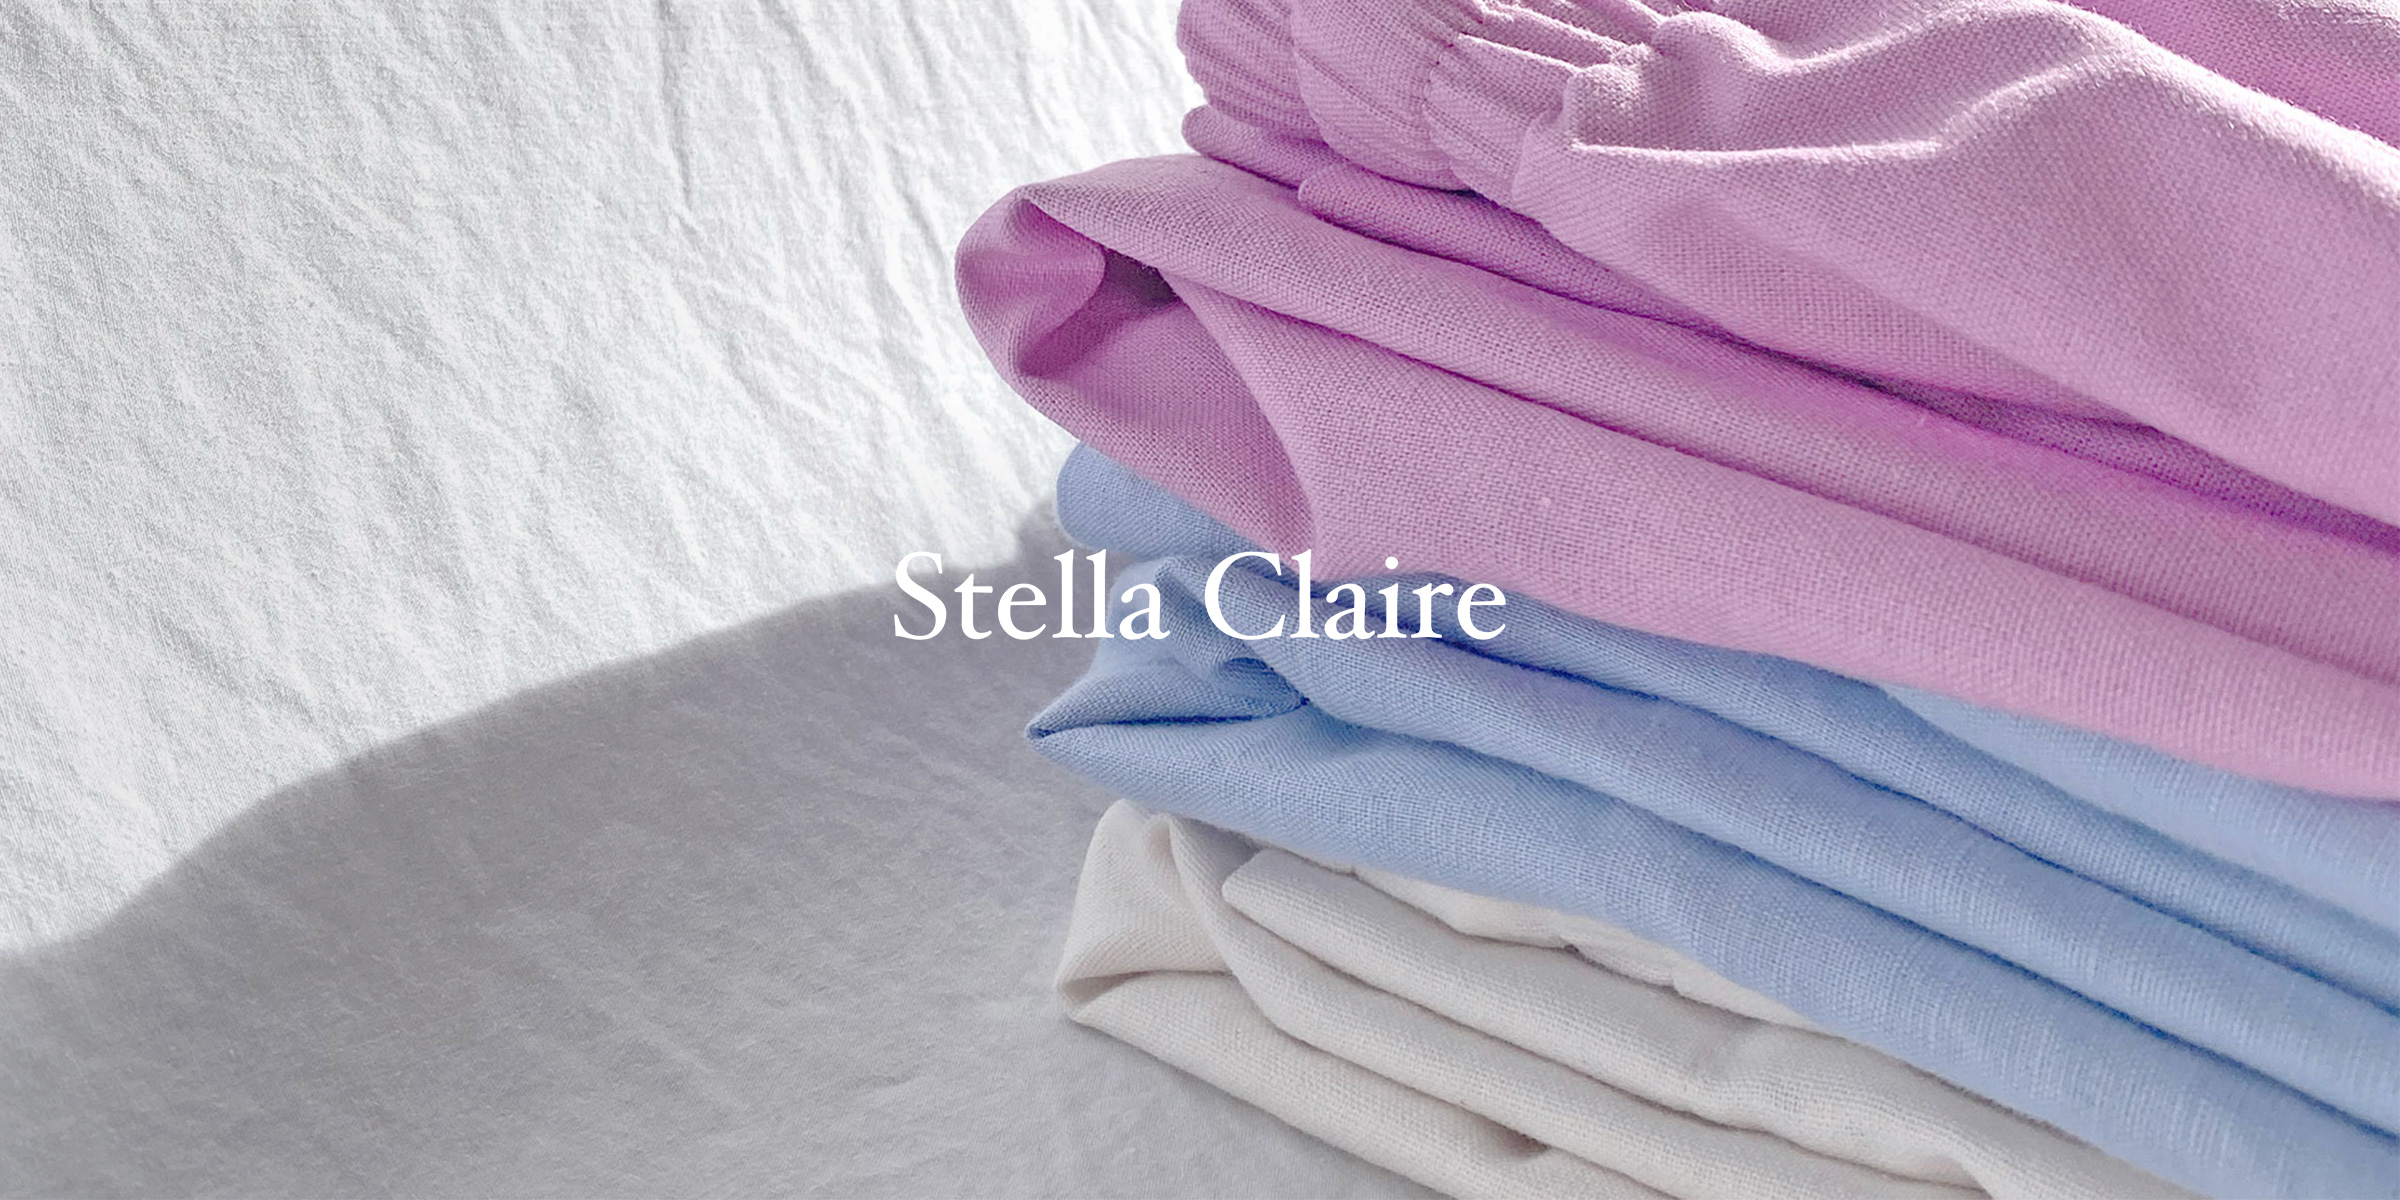 Stella Claire